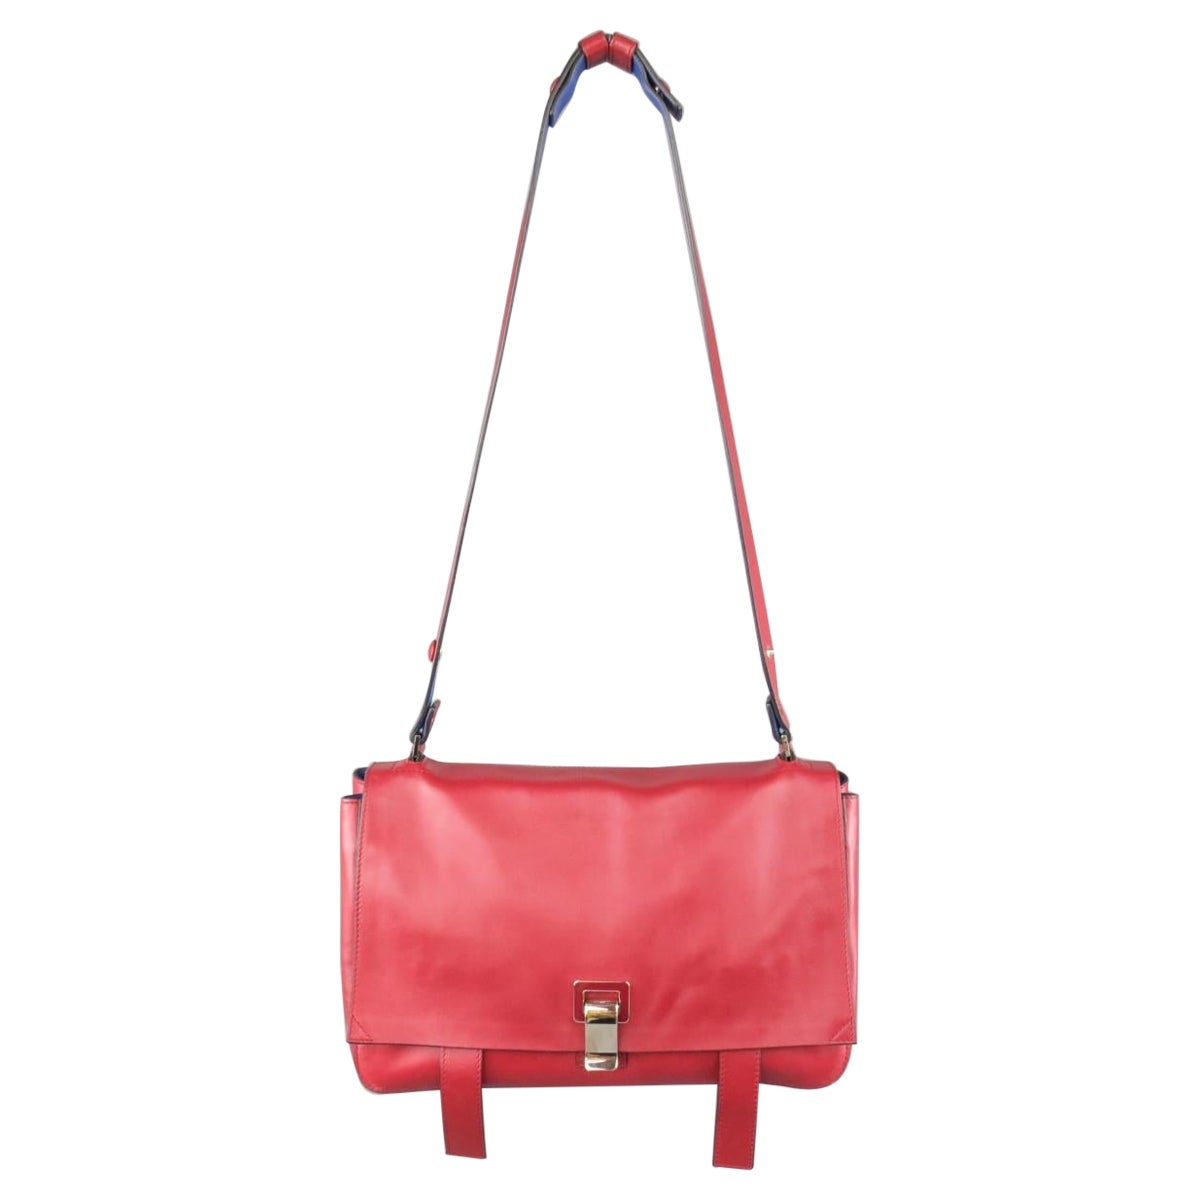 PROENZA SCHOULER Red & Blue Color Block Leather Shoulder Bag For Sale